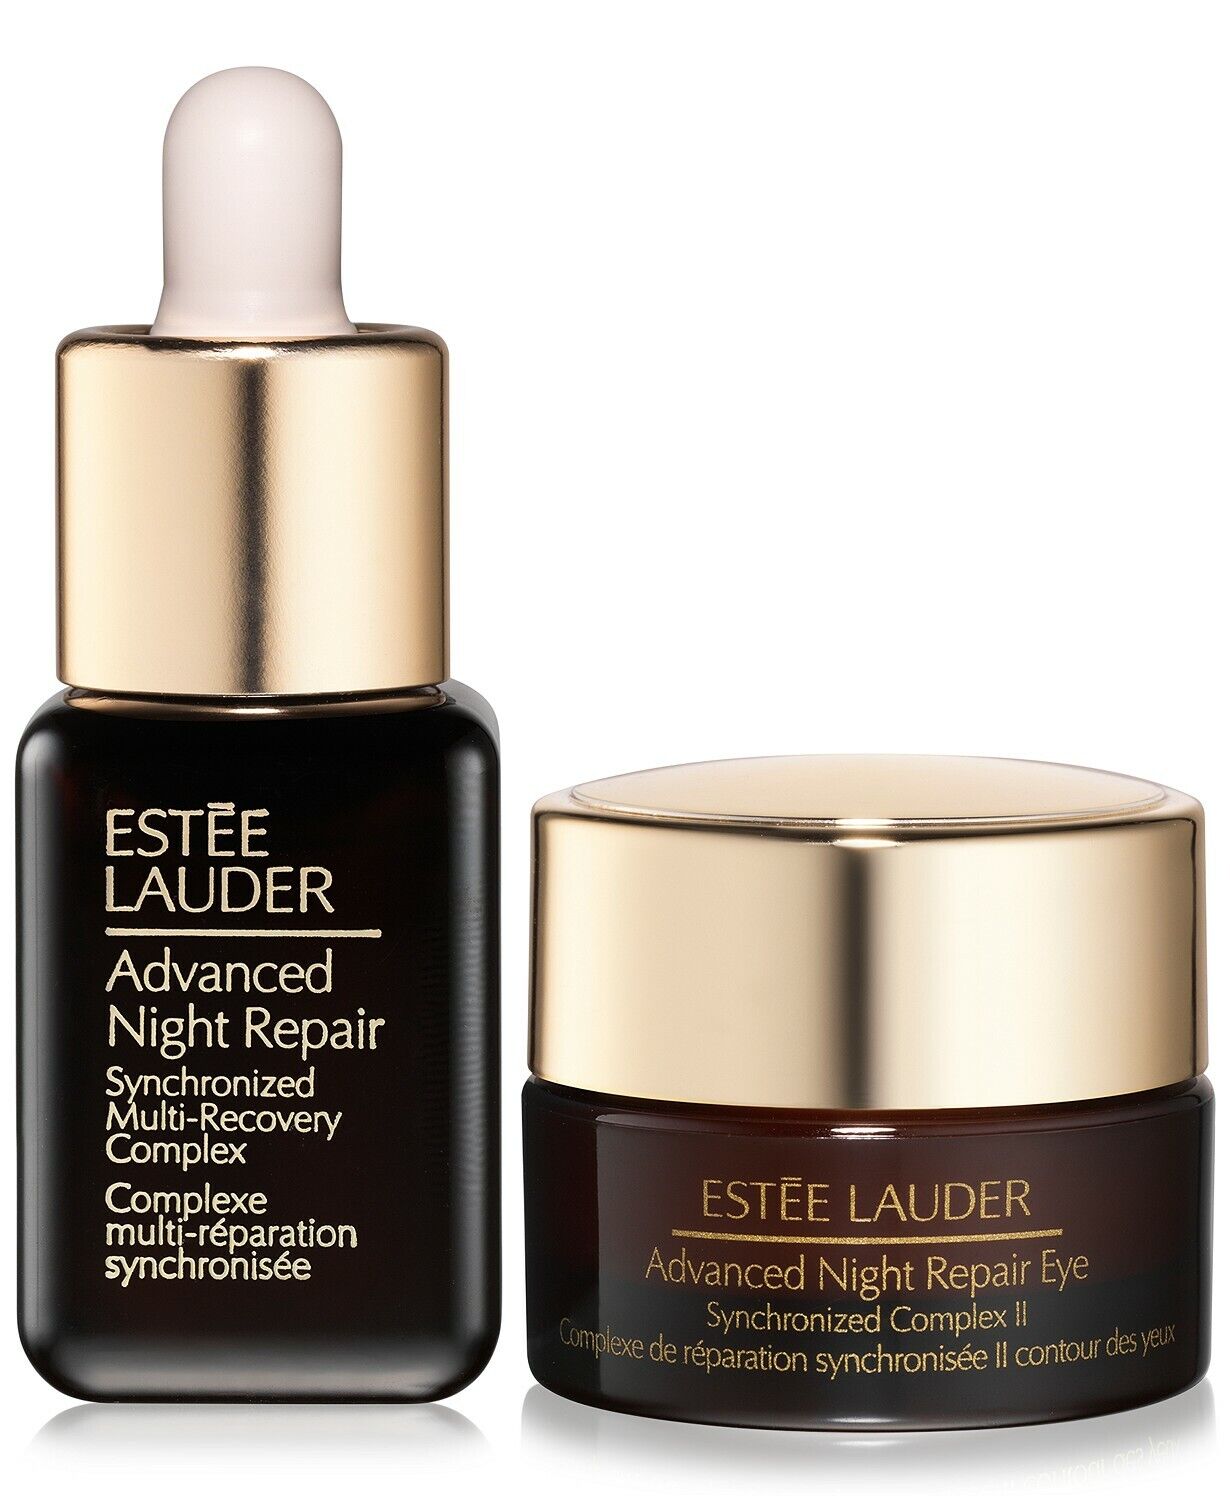 Estee Lauder Advanced Night Repair Repair Serum + Eye Creme Duo Travel Size ESTEE Lauder - фотография #2